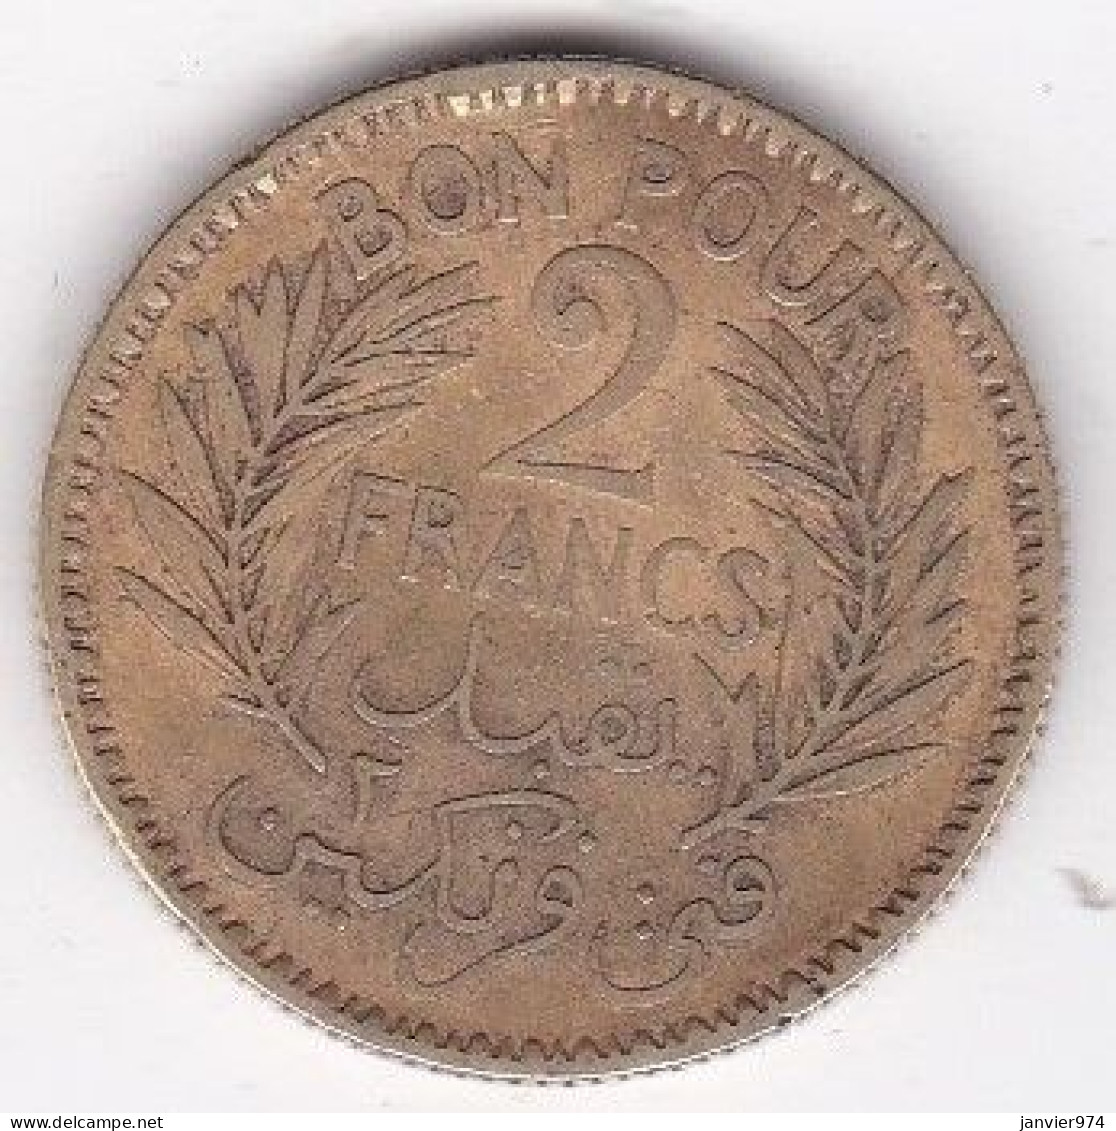 Protectorat Français Bon Pour 2 Francs 1941 / 1360, En Bronze Aluminium, Lec# 295 - Tunisie